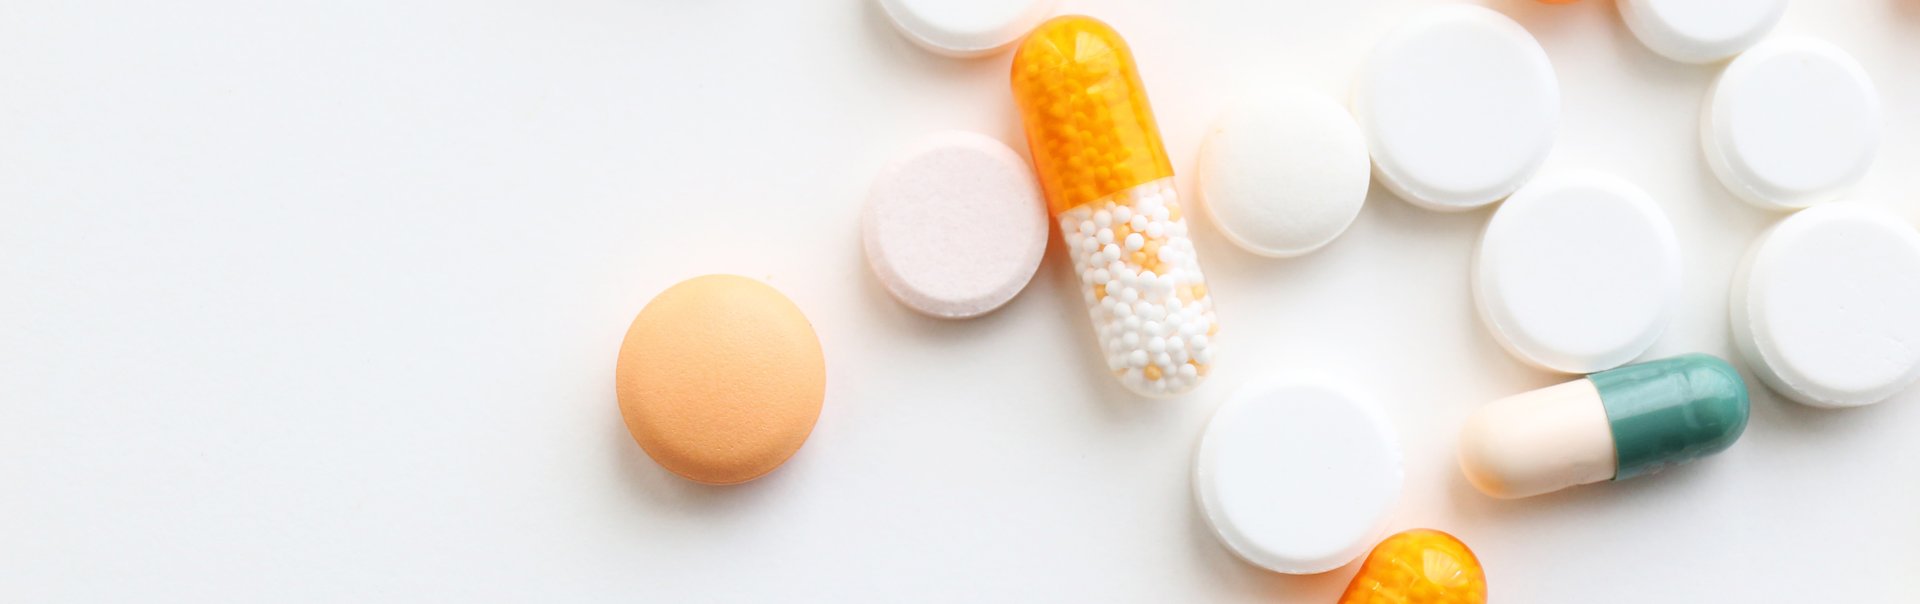 Nahaufnahme von Pillen und Tabletten